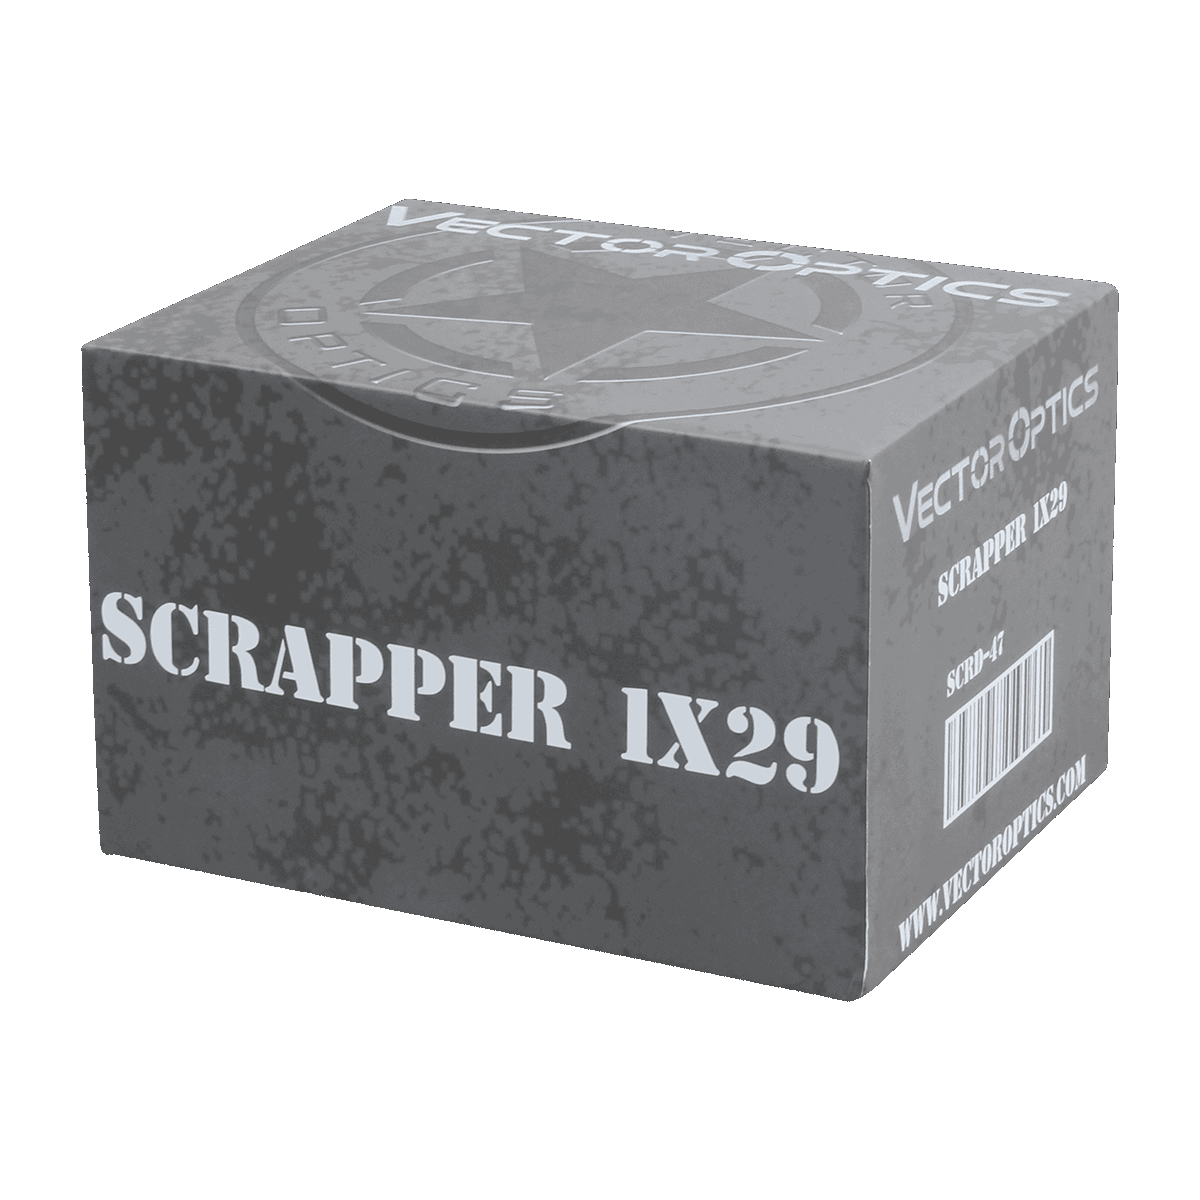 Scrapper 1x29 Red Dot Scope